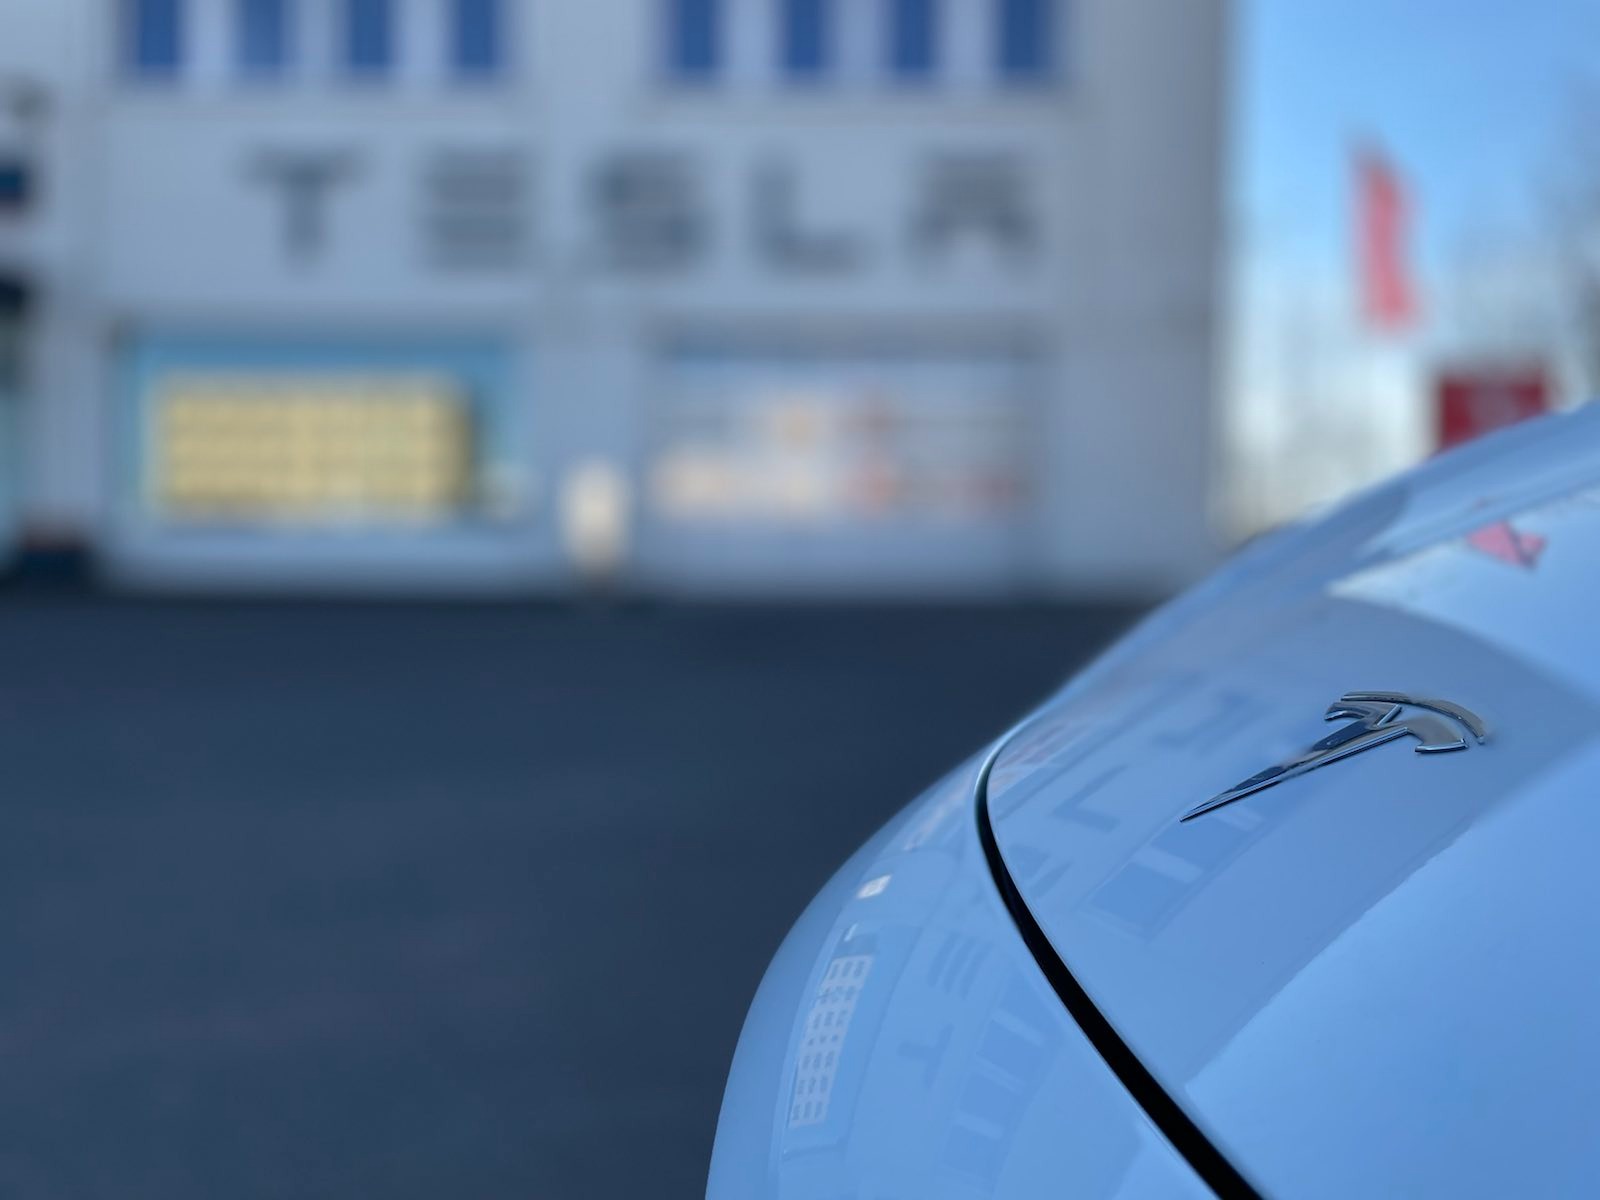   E-Autos füttern KI | Der Nicht-nur-Automobilhersteller Tesla stellt Behörden vor rechtliche Probleme und fährt uns in die Matrix – auch wenn wir gar nicht drinsitzen  